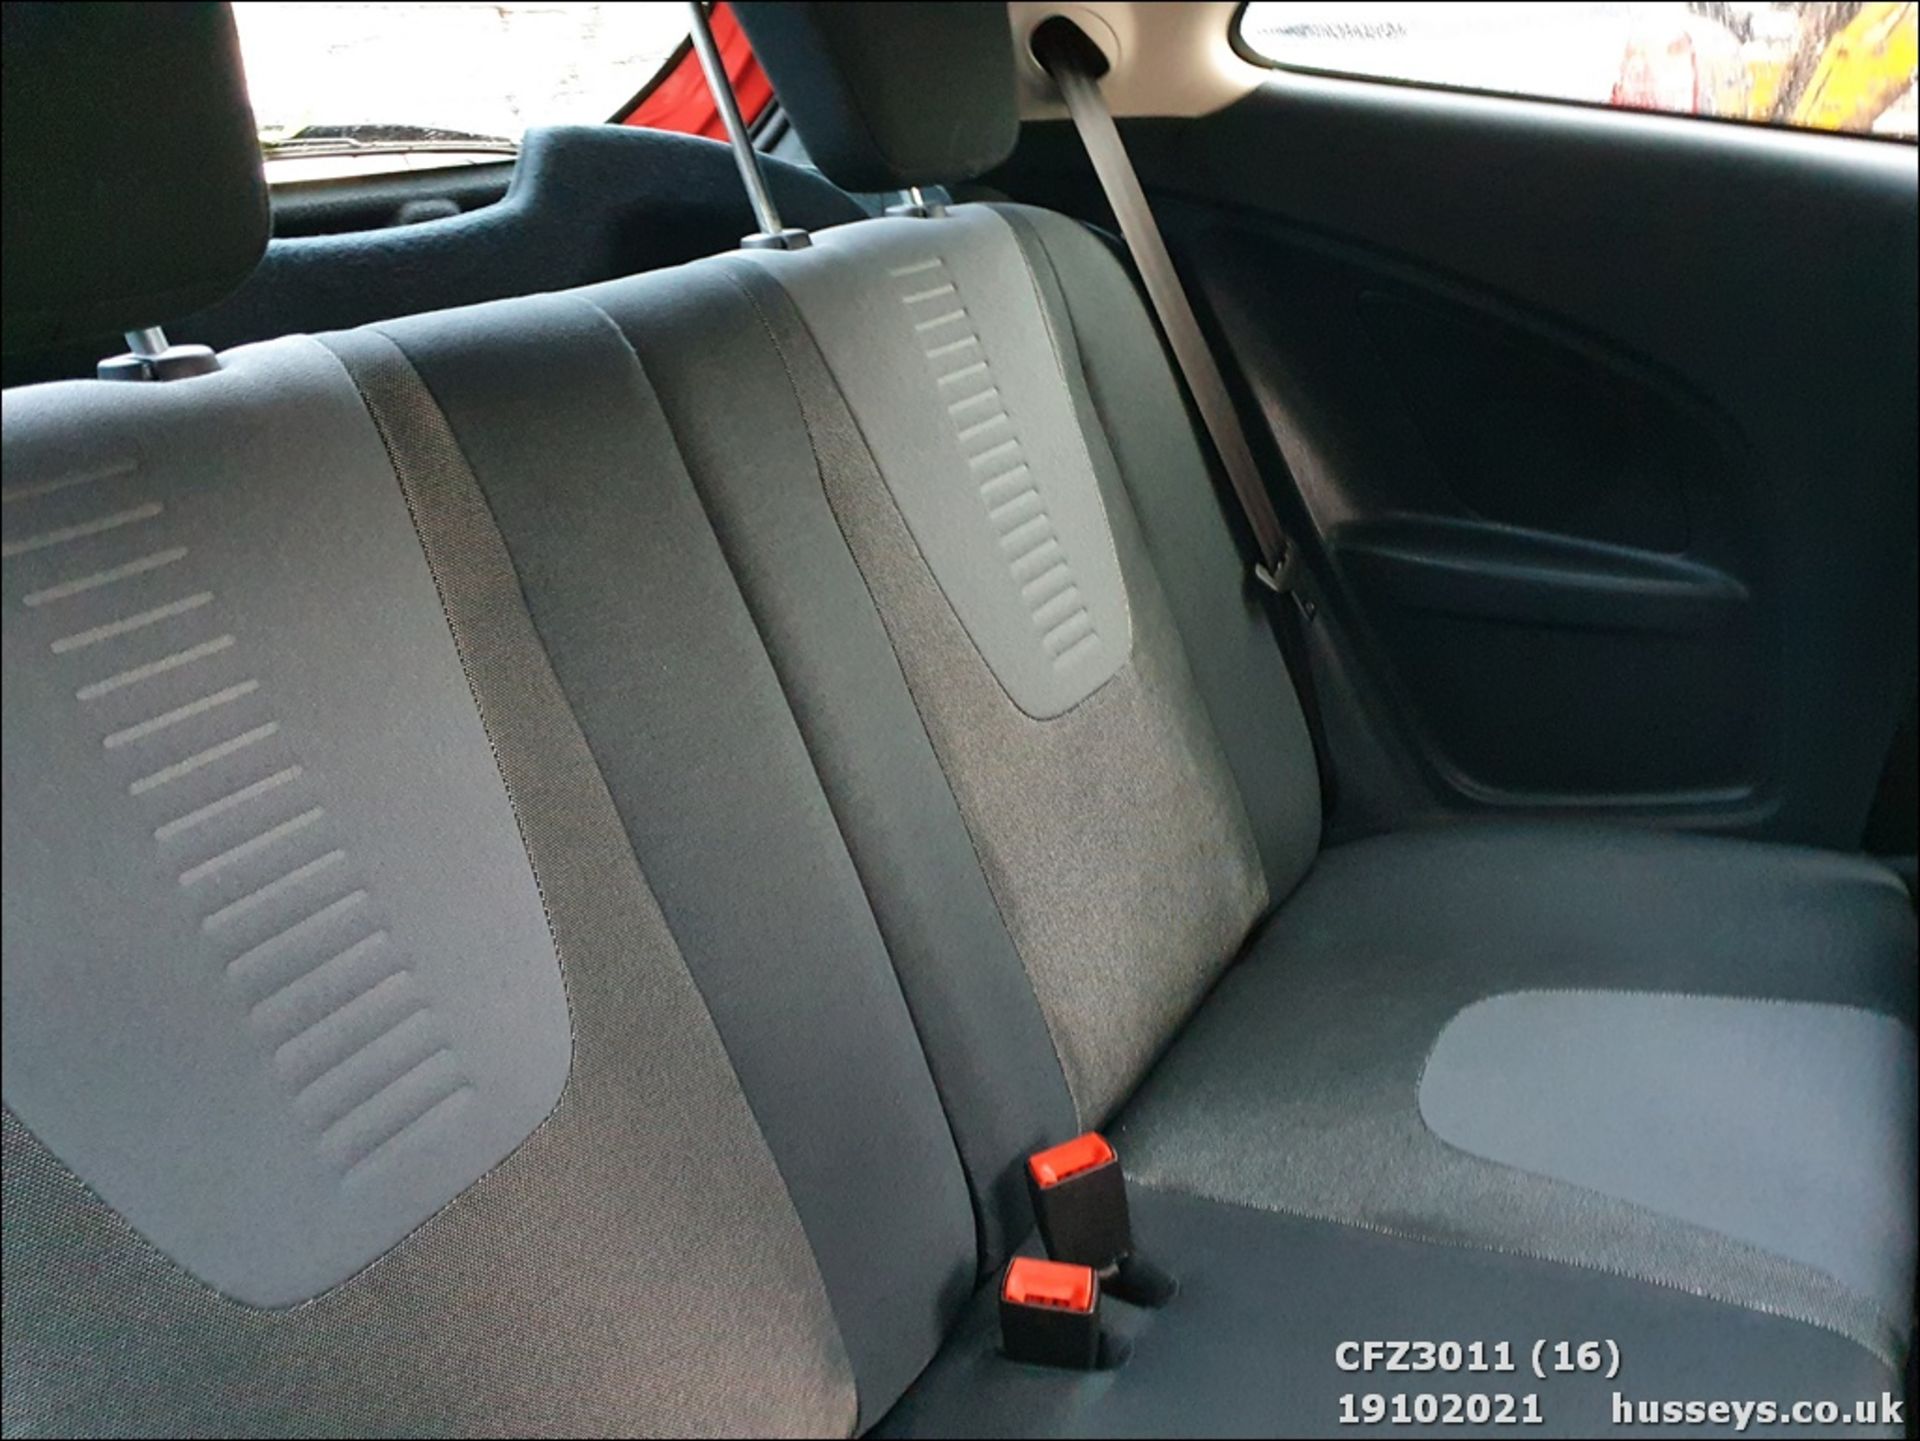 2010 FORD KA ZETEC TDCI - 1268cc 3dr Hatchback (Red, 67k) - Image 16 of 20